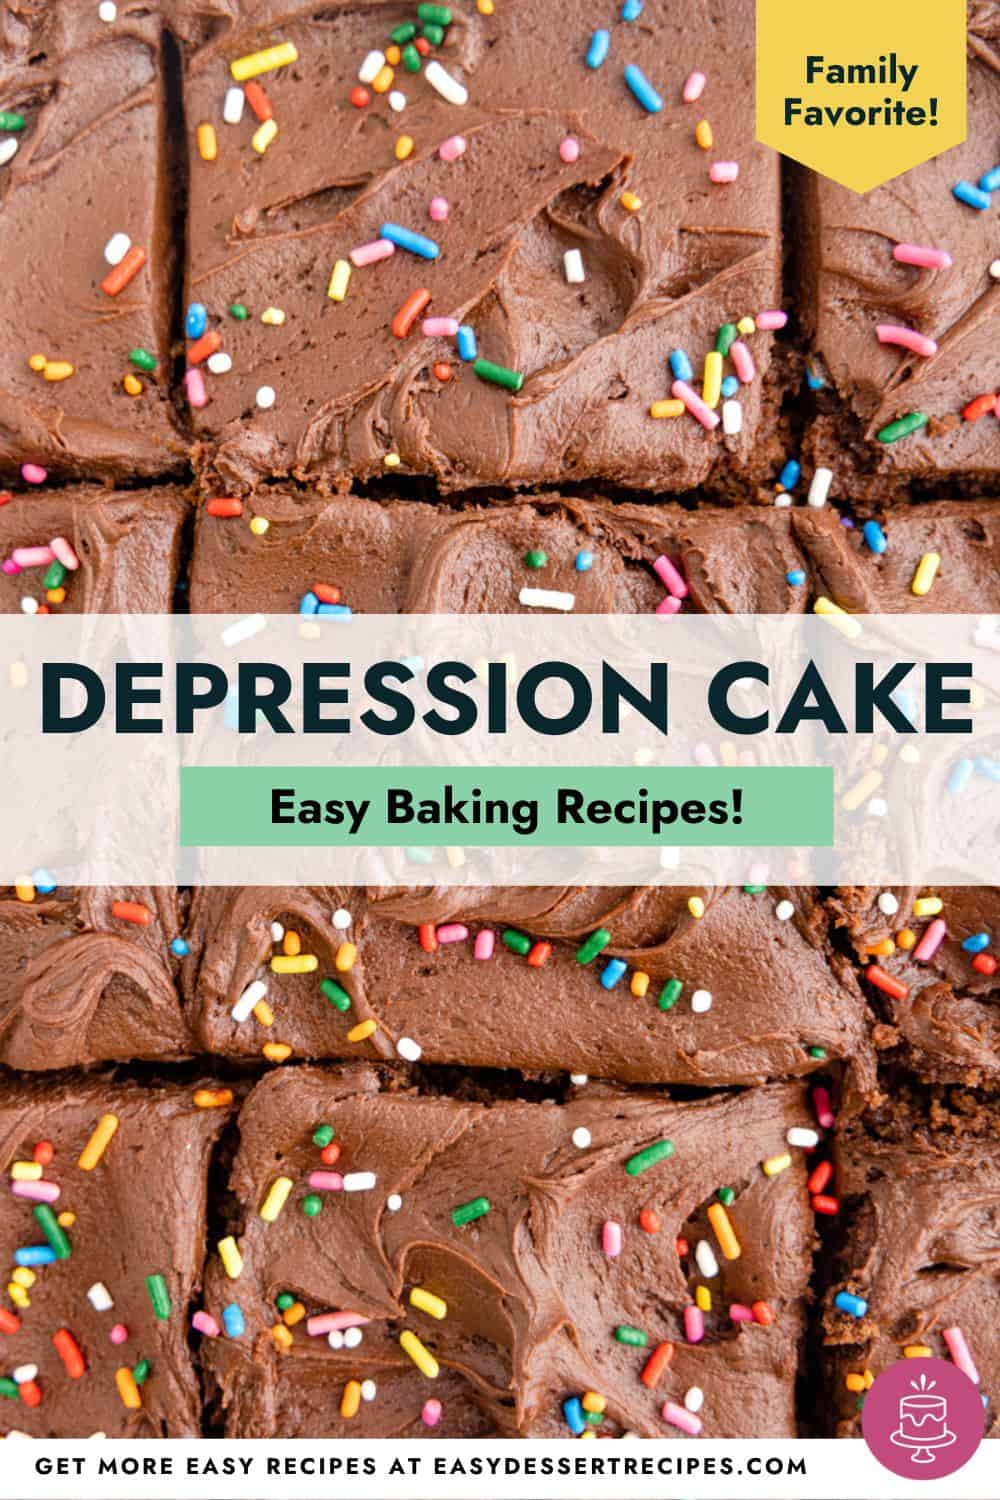 Depression cake easy baking recipes.